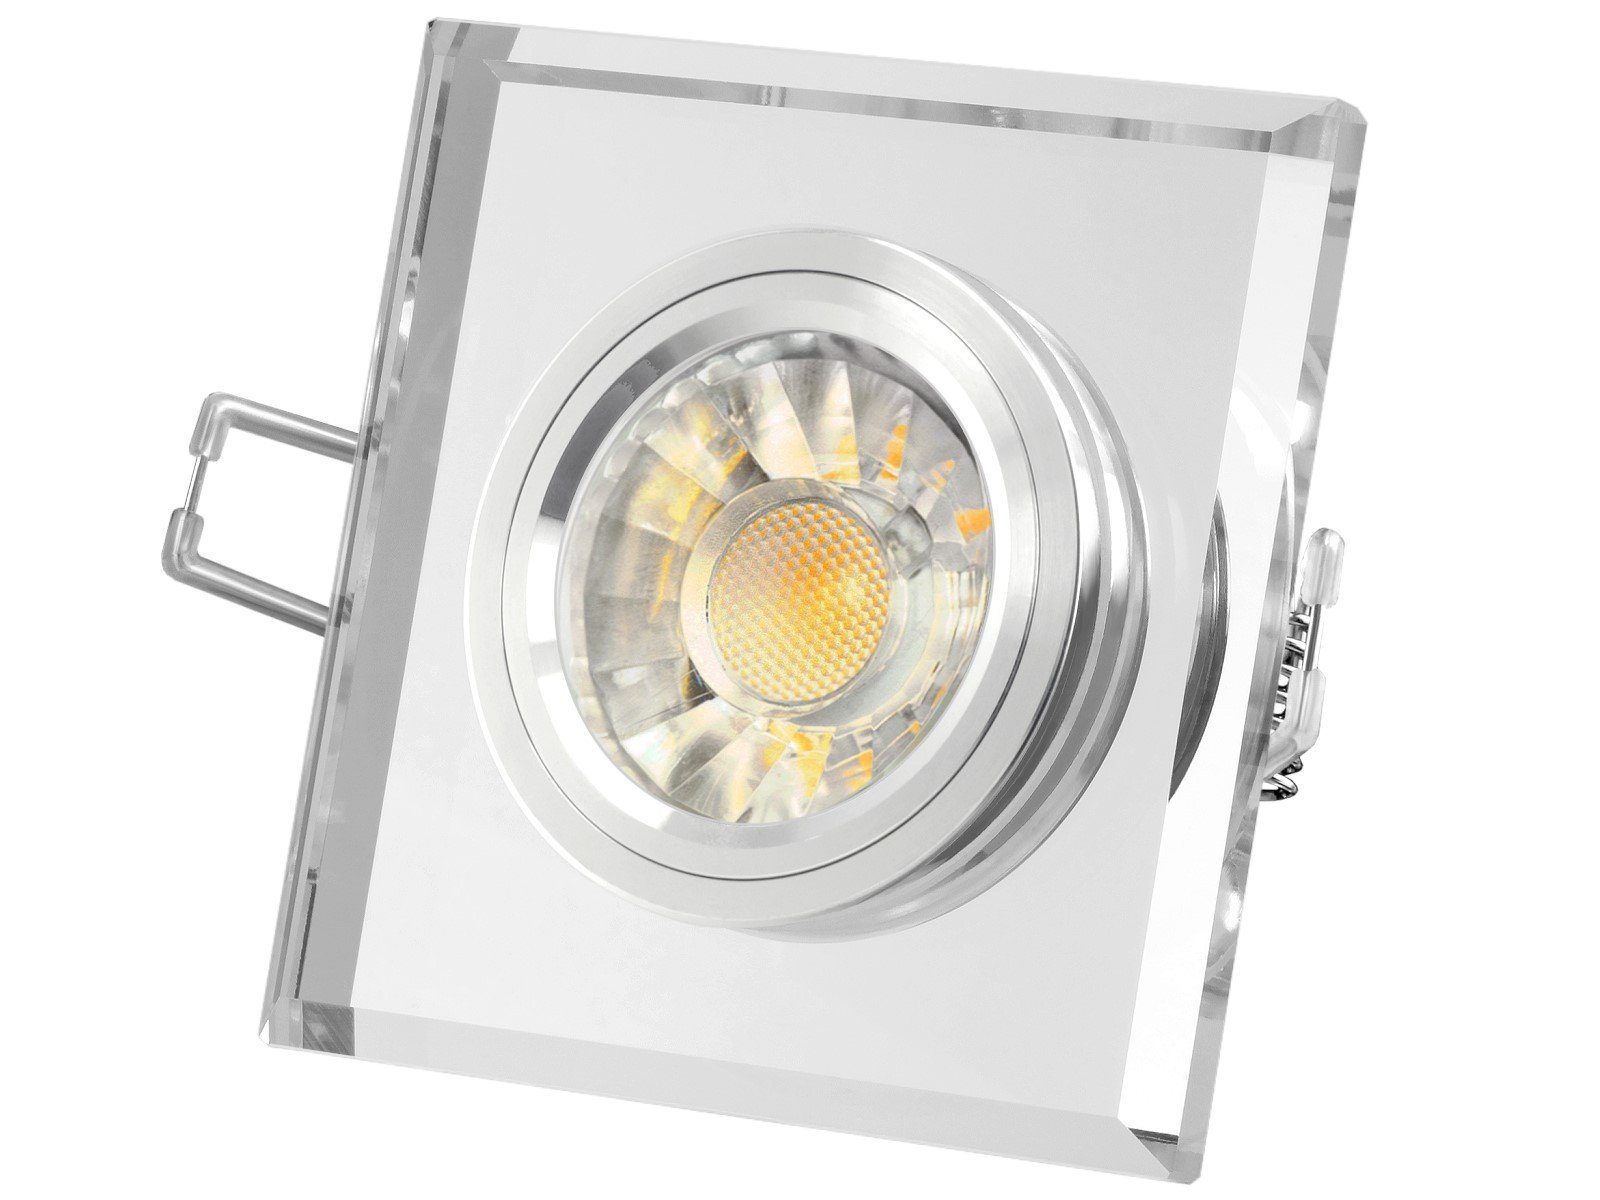 SSC-LUXon LED Einbaustrahler Design Einbaustrahler aus Glas quadratisch klar spiegelnd, LED 7W, Warmweiß